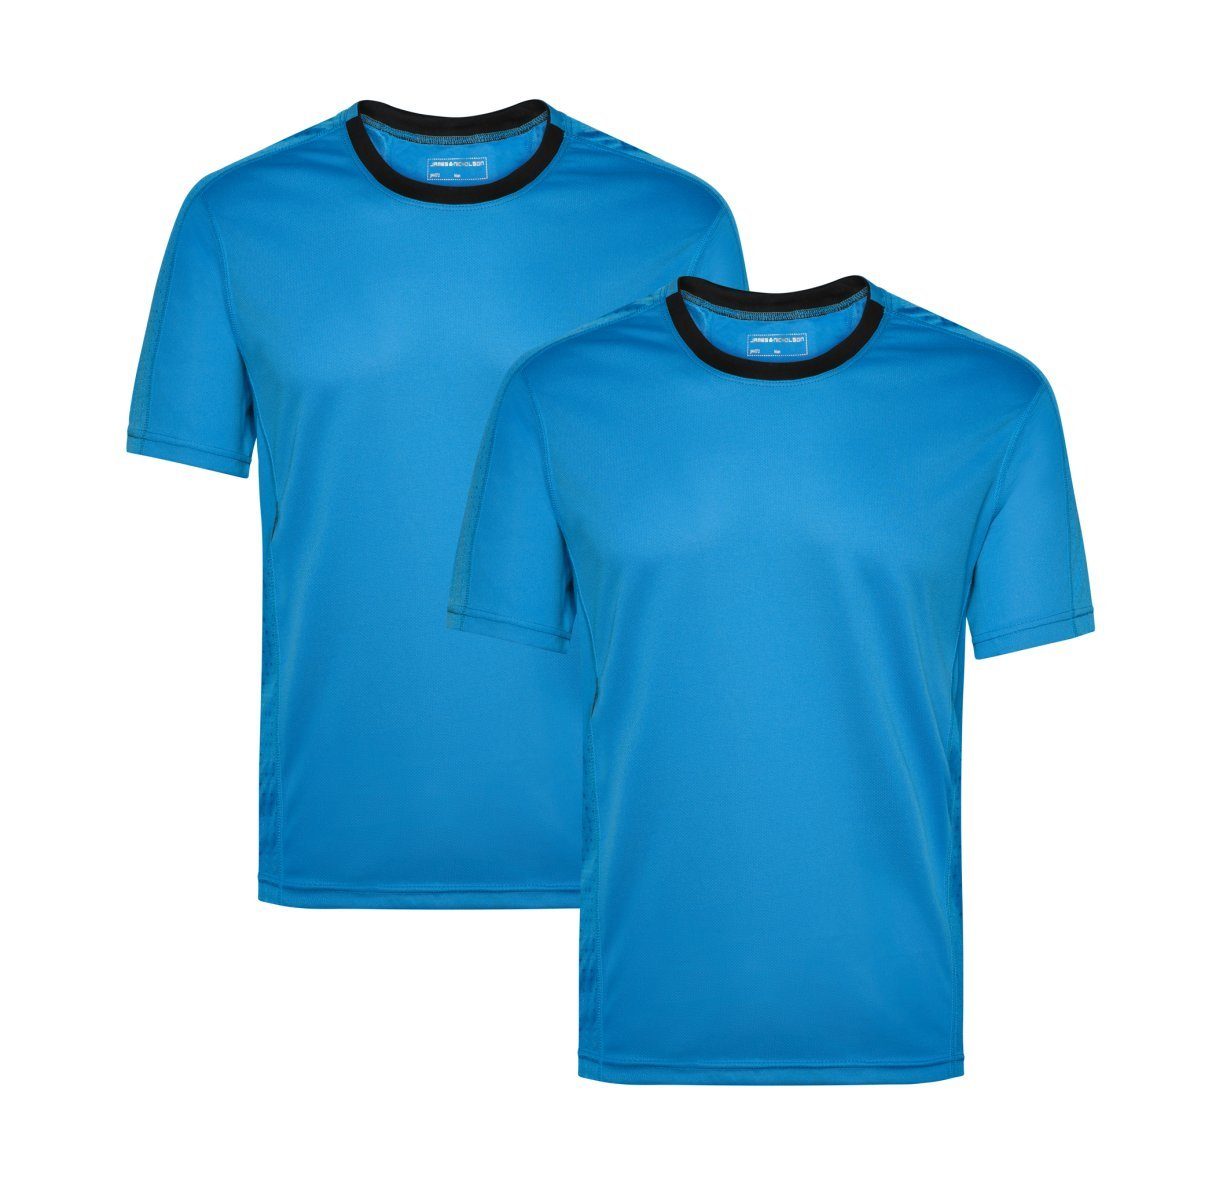 James & Nicholson Laufshirt Doppelpack Herren Kurzarm Laufshirt Running T-Shirt JN472 (Doppelpack, 2er-Pack) Atmungsaktiv und Feuchtigkeitsregulierend atlantic/black